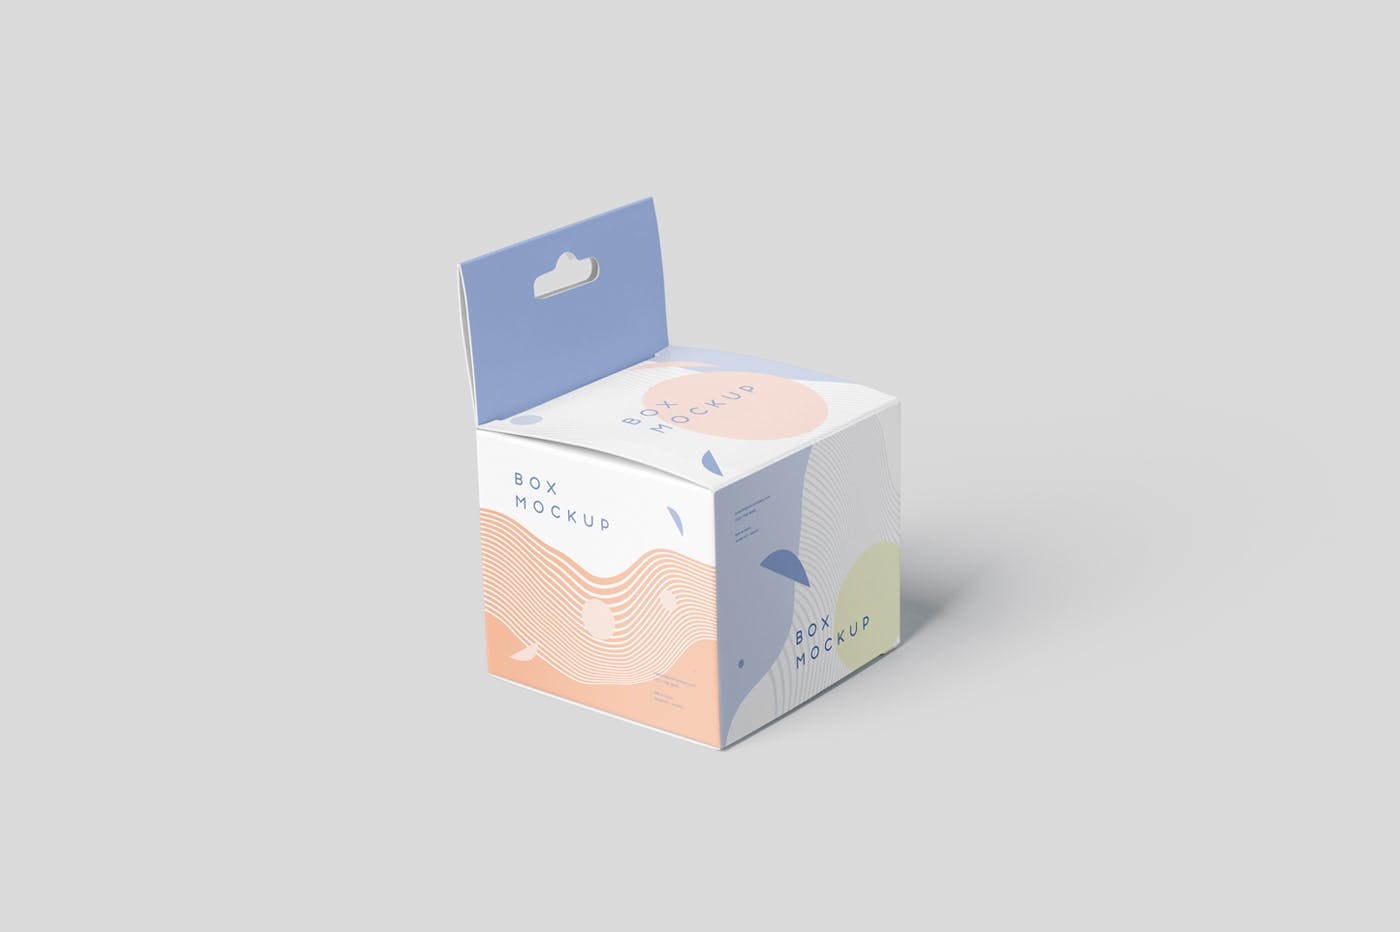 挂耳式迷你方形包装盒第一素材精选模板 Box Mockup Set – Mini Square with Hanger插图(2)